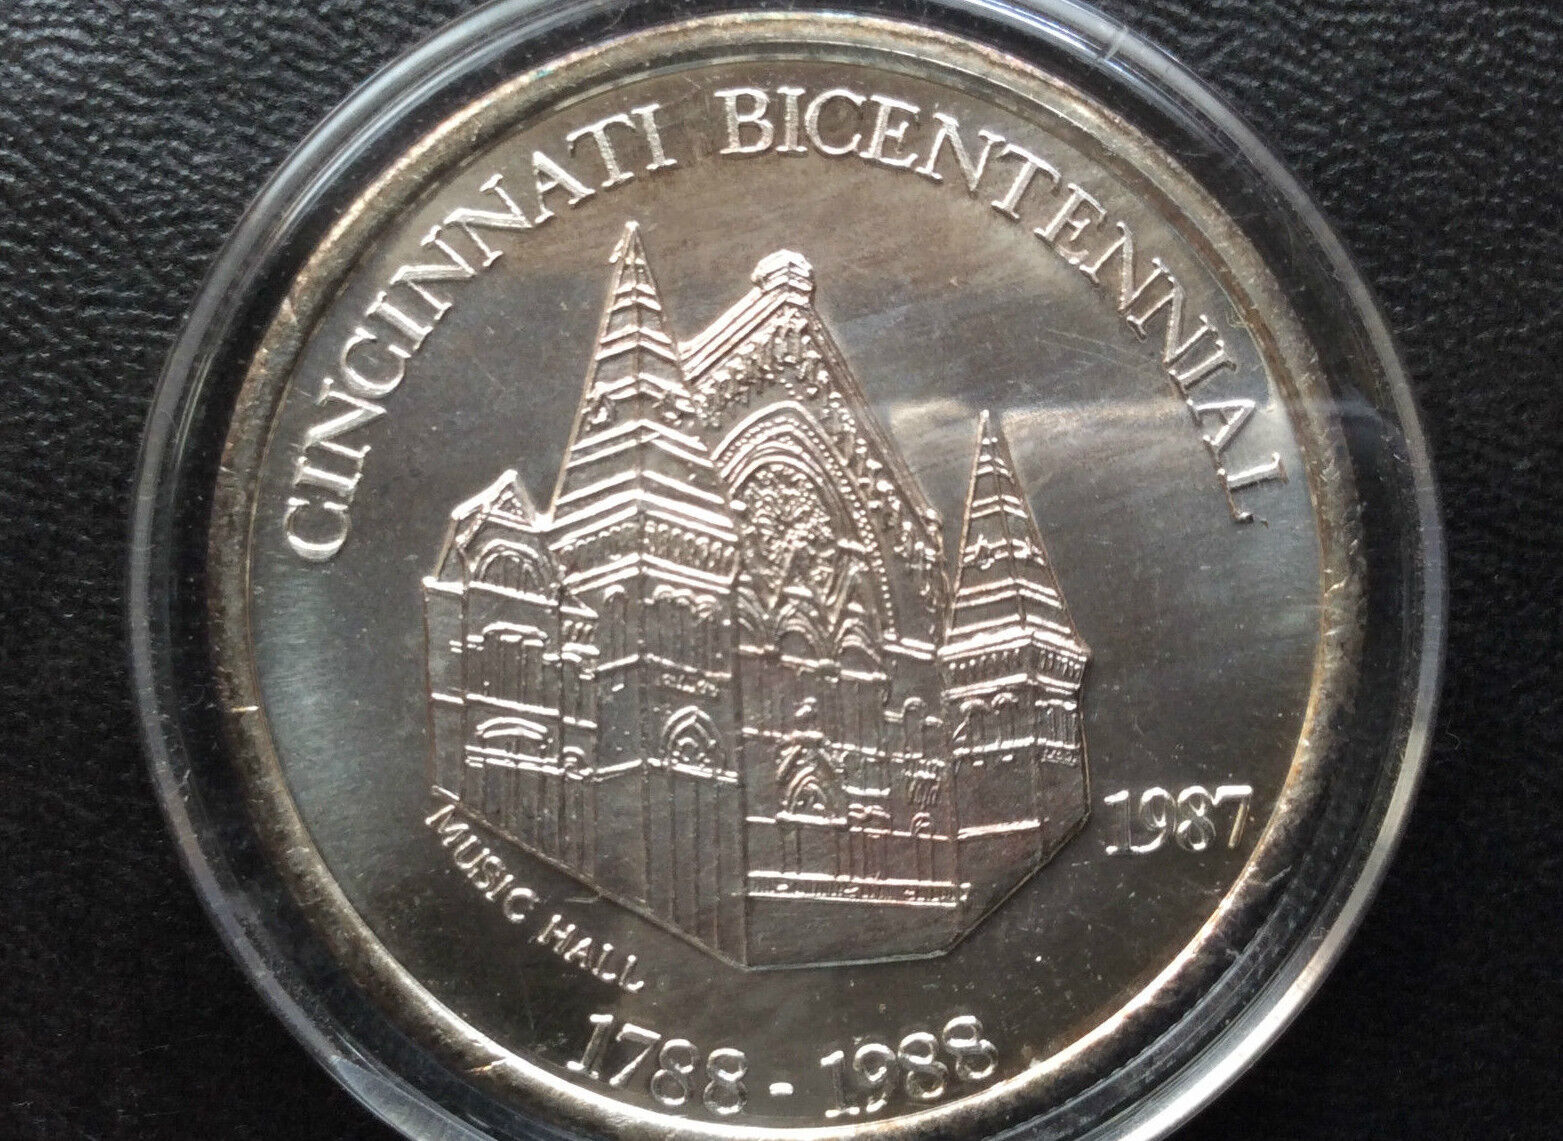 1987 Music Hall Cincinnati Bicentennial Commemorative Silver Medal A2024 Zaskakująca wyjątkowa wartość, prawdziwa gwarancja